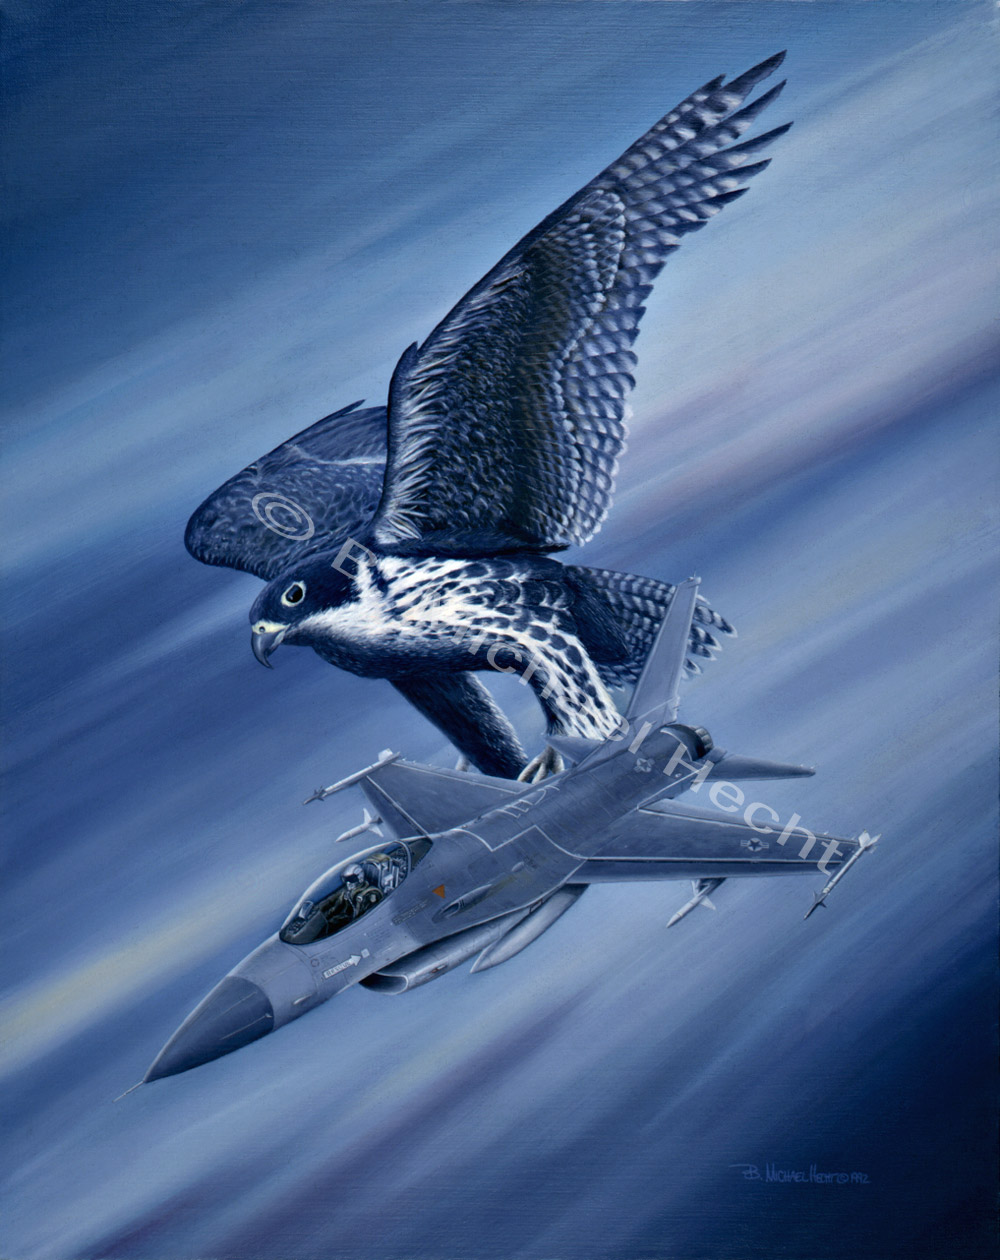 Falcon Fury II, by B. Michael Hecht